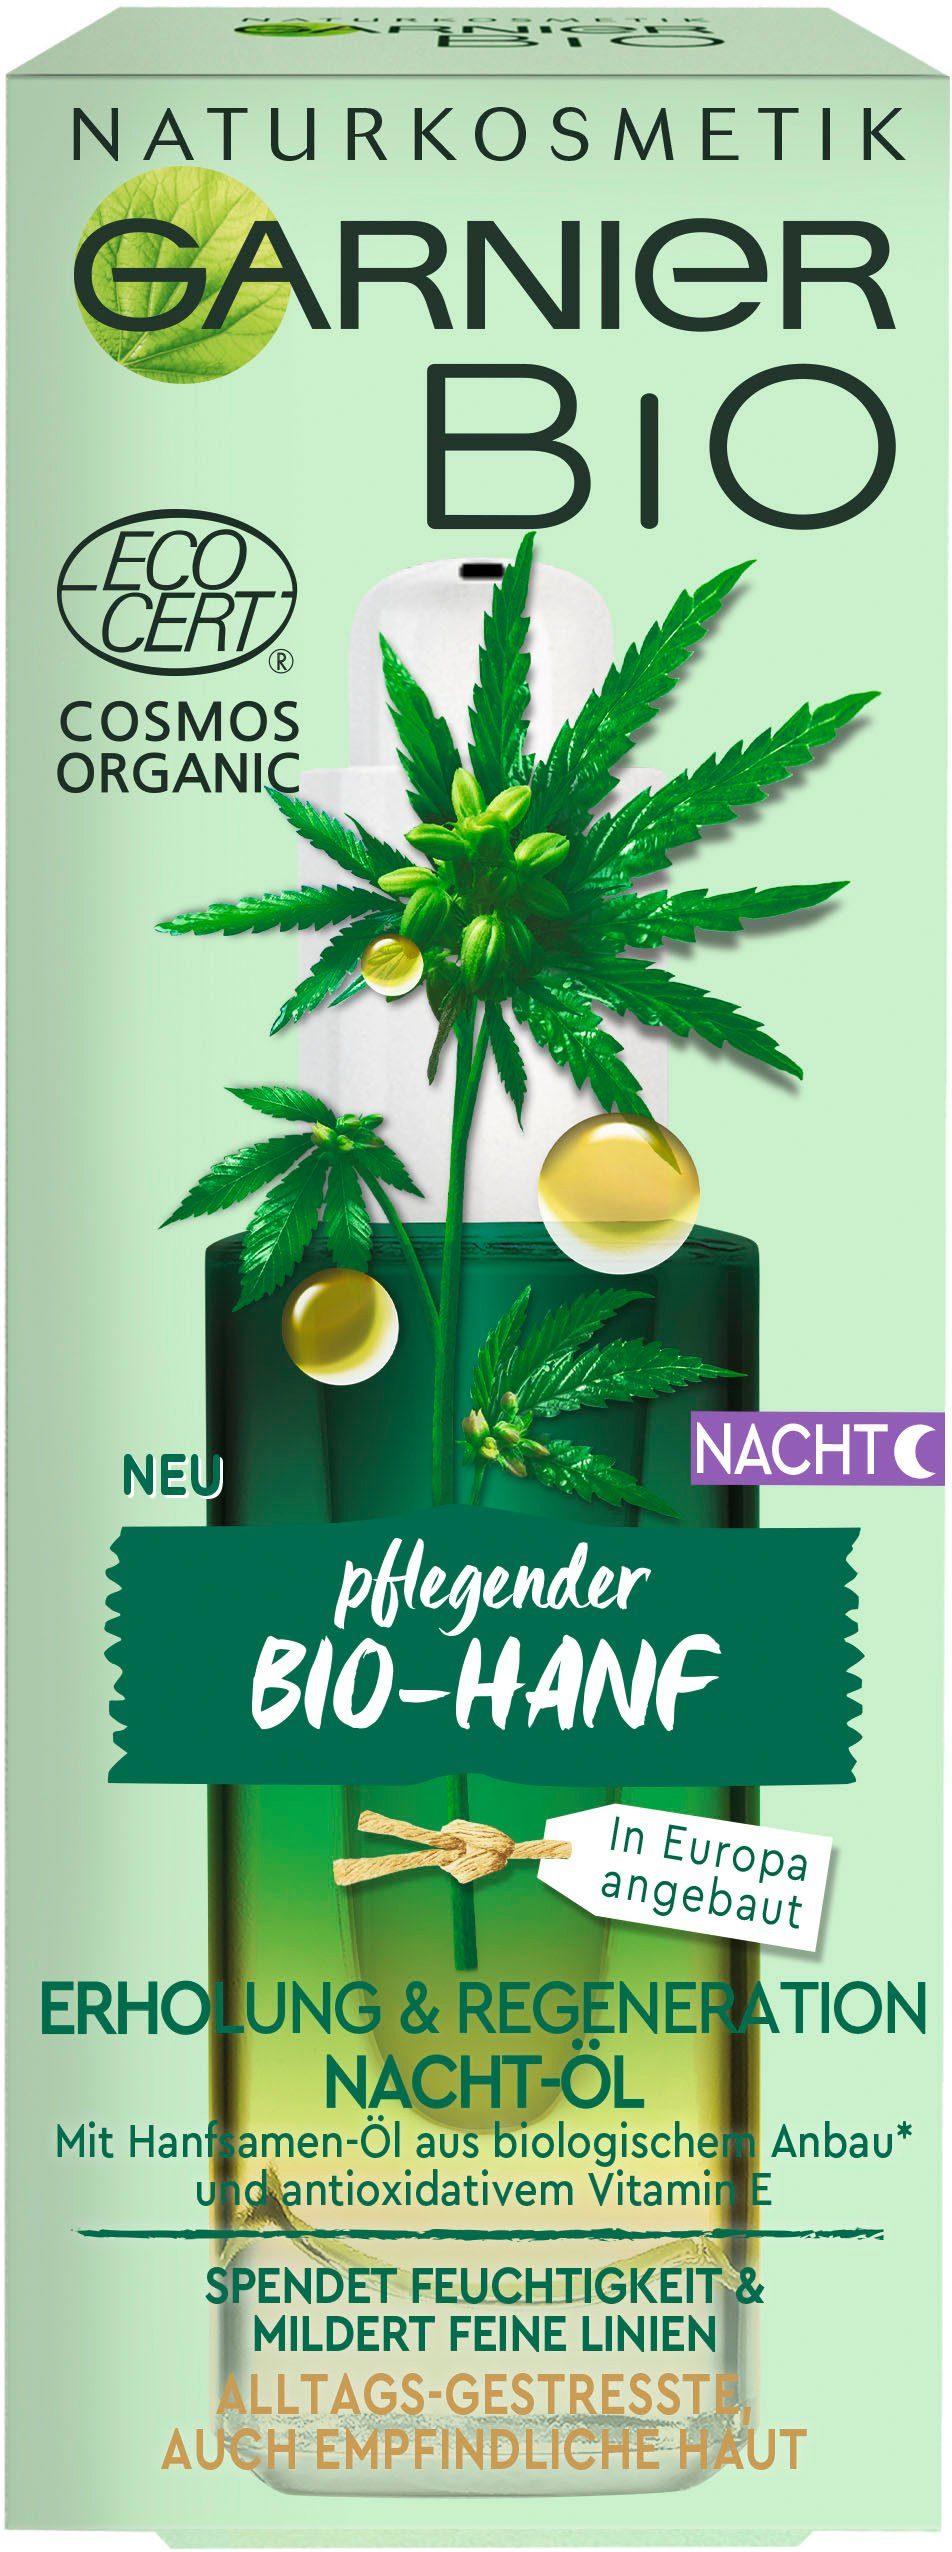 Bio-Hanf GARNIER Naturkosmetik Erholung Regeneration Gesichtsöl & Nacht-Öl,